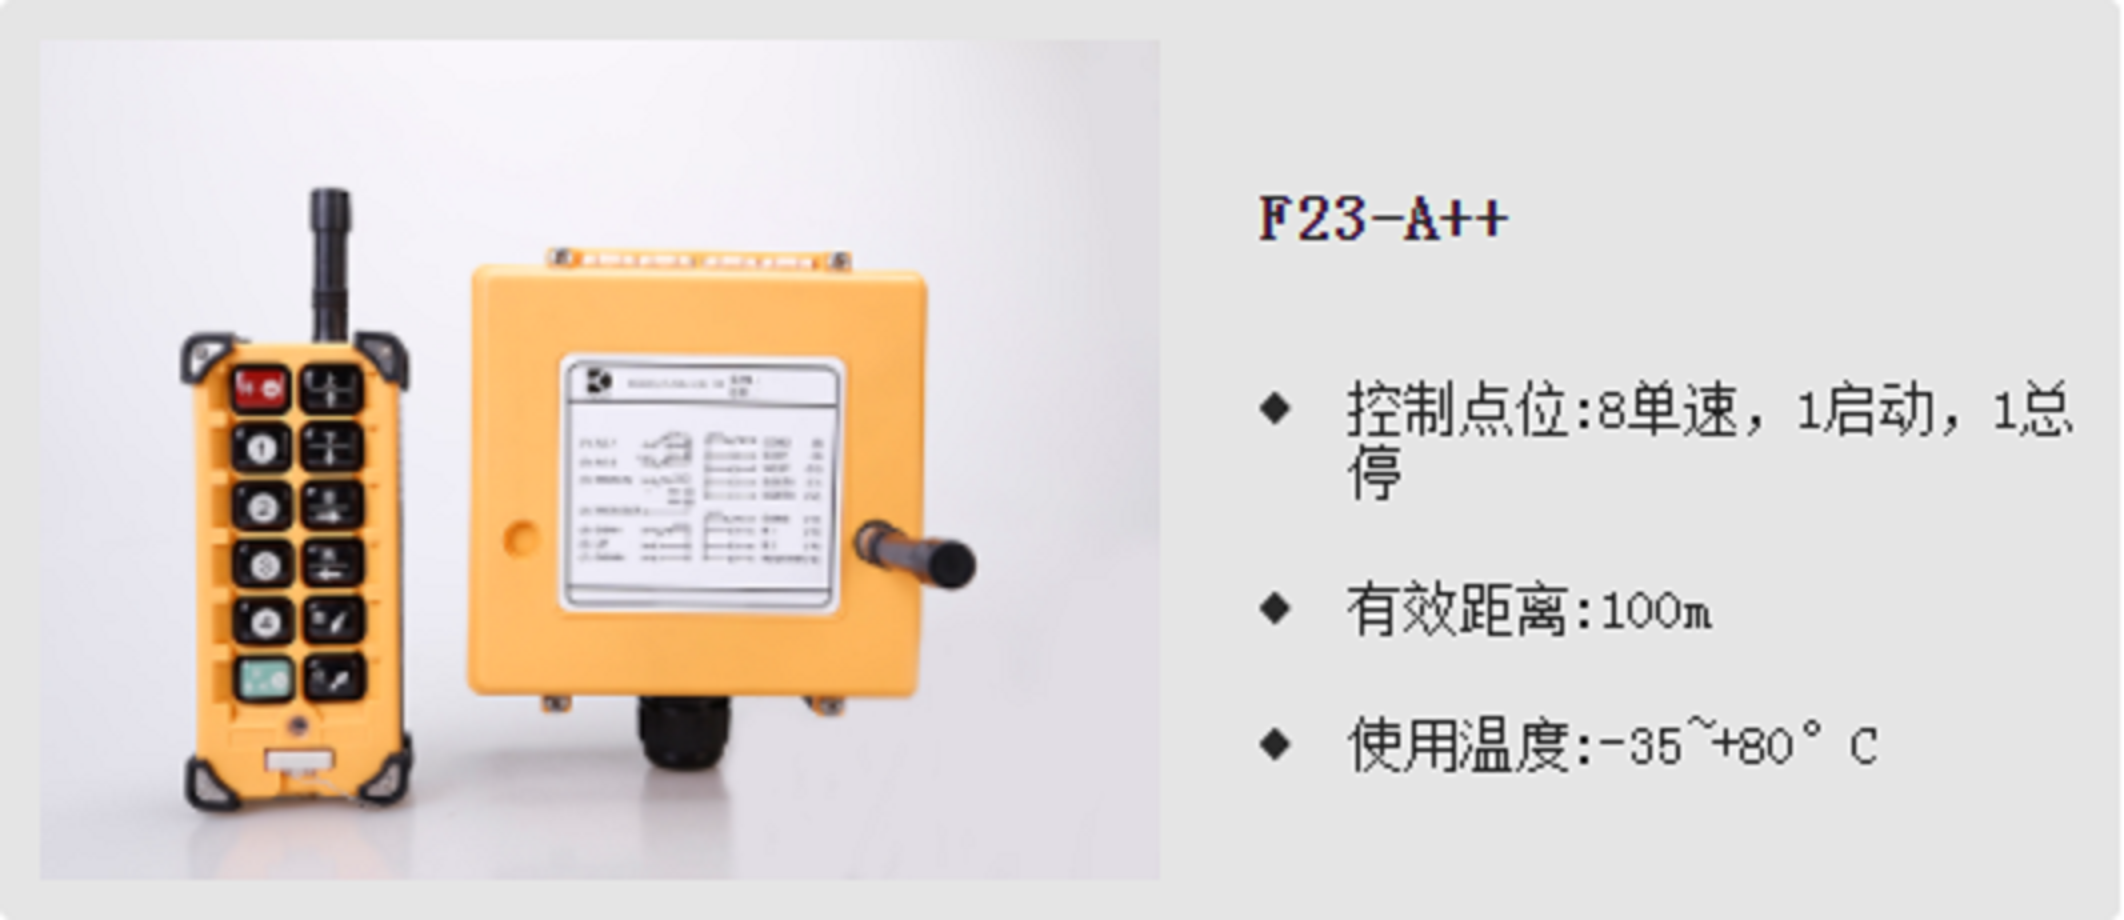 禹鼎F23-A++工业无线遥控器、行车、吊机、打包机等重工业行业